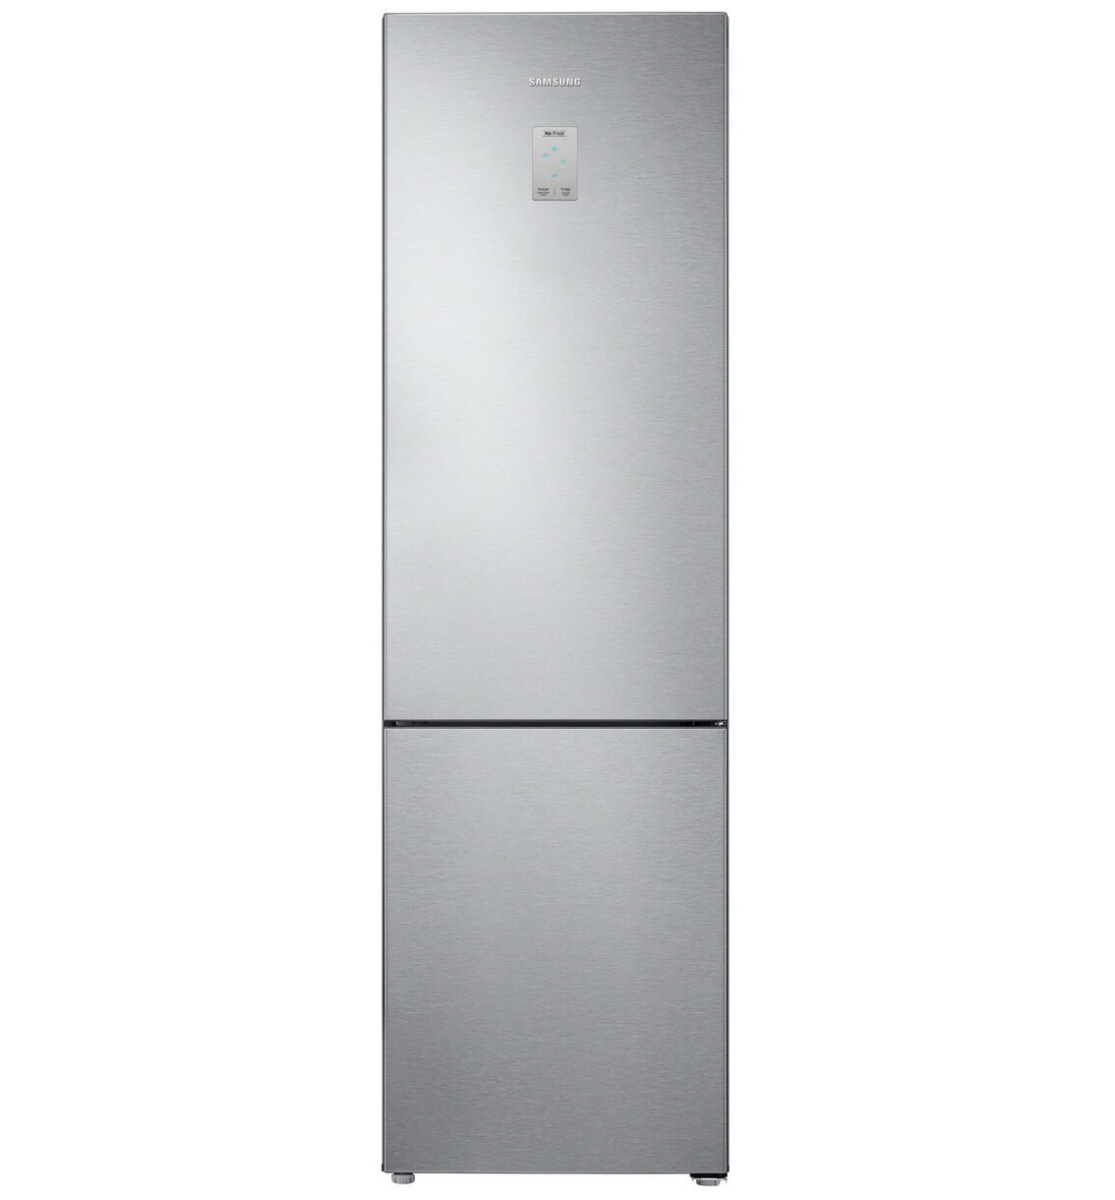 Холодильники no frost купить в москве. Холодильник Samsung RB-34n5291sl. Холодильник Samsung rb37a5000sa. Холодильник самсунг rb3735000sa. Холодильник Samsung rb37a5200sa серебристый.